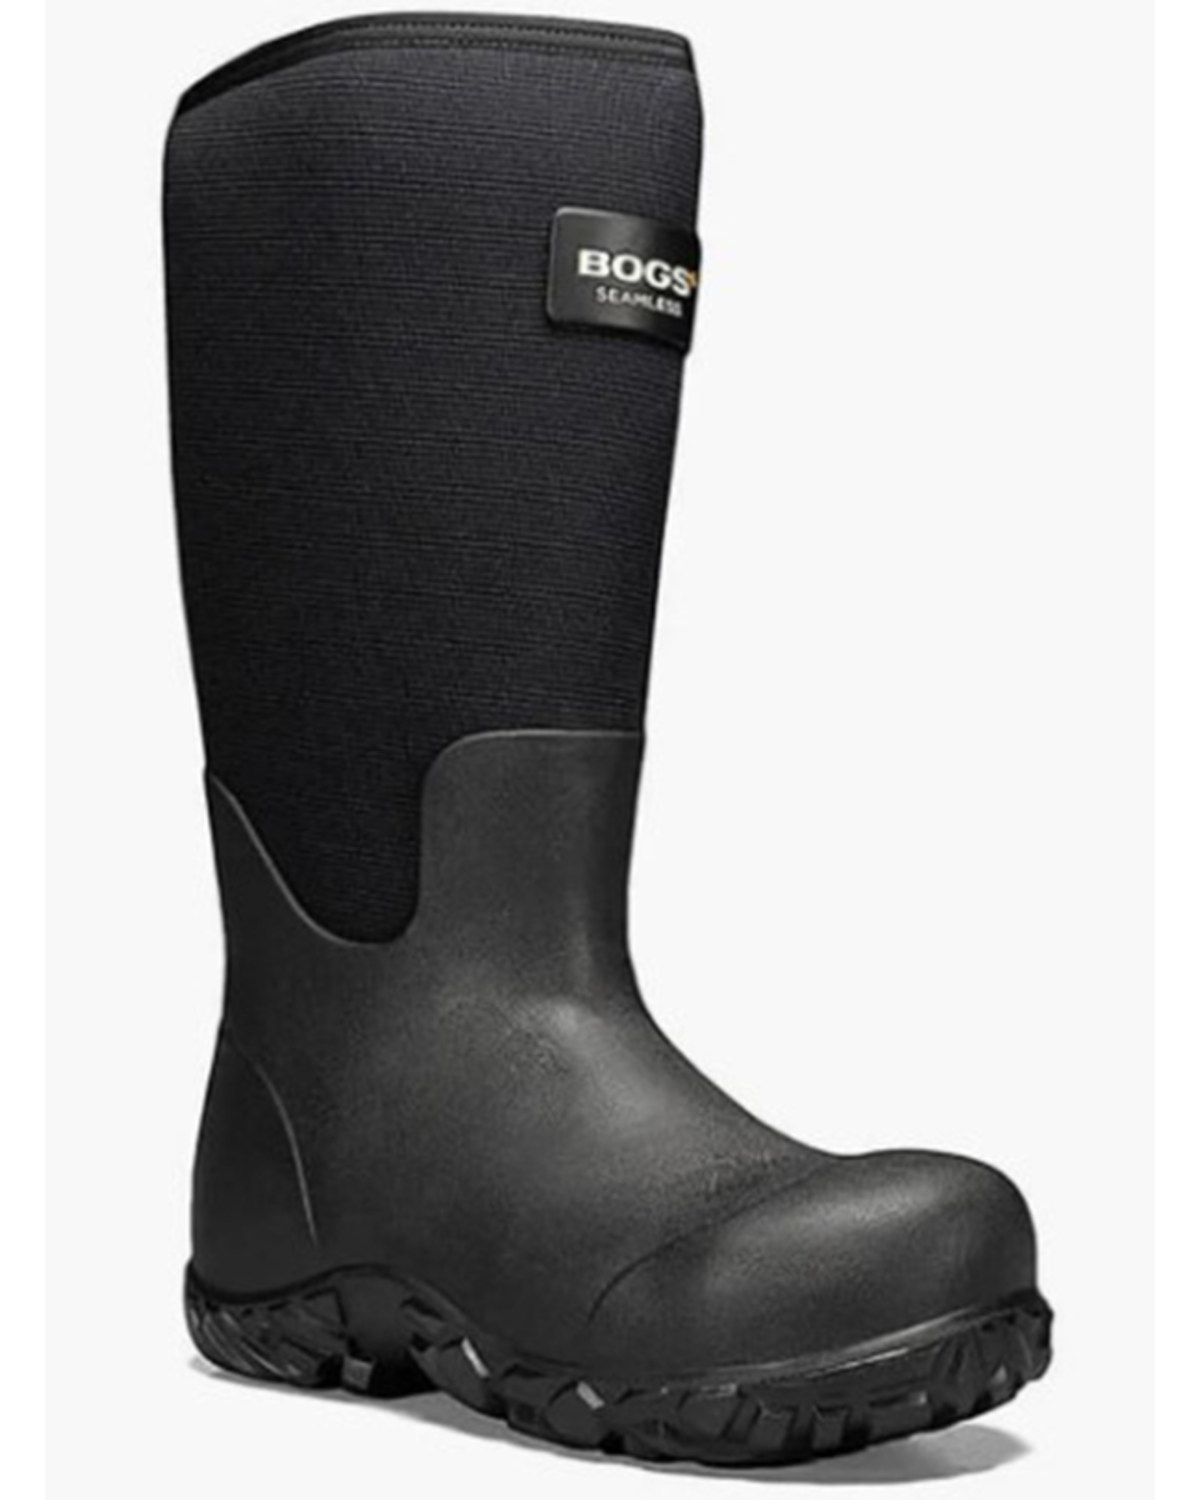 Bogs Men's Workman 17" Waterproof Insulated Work Boots - Composite Toe